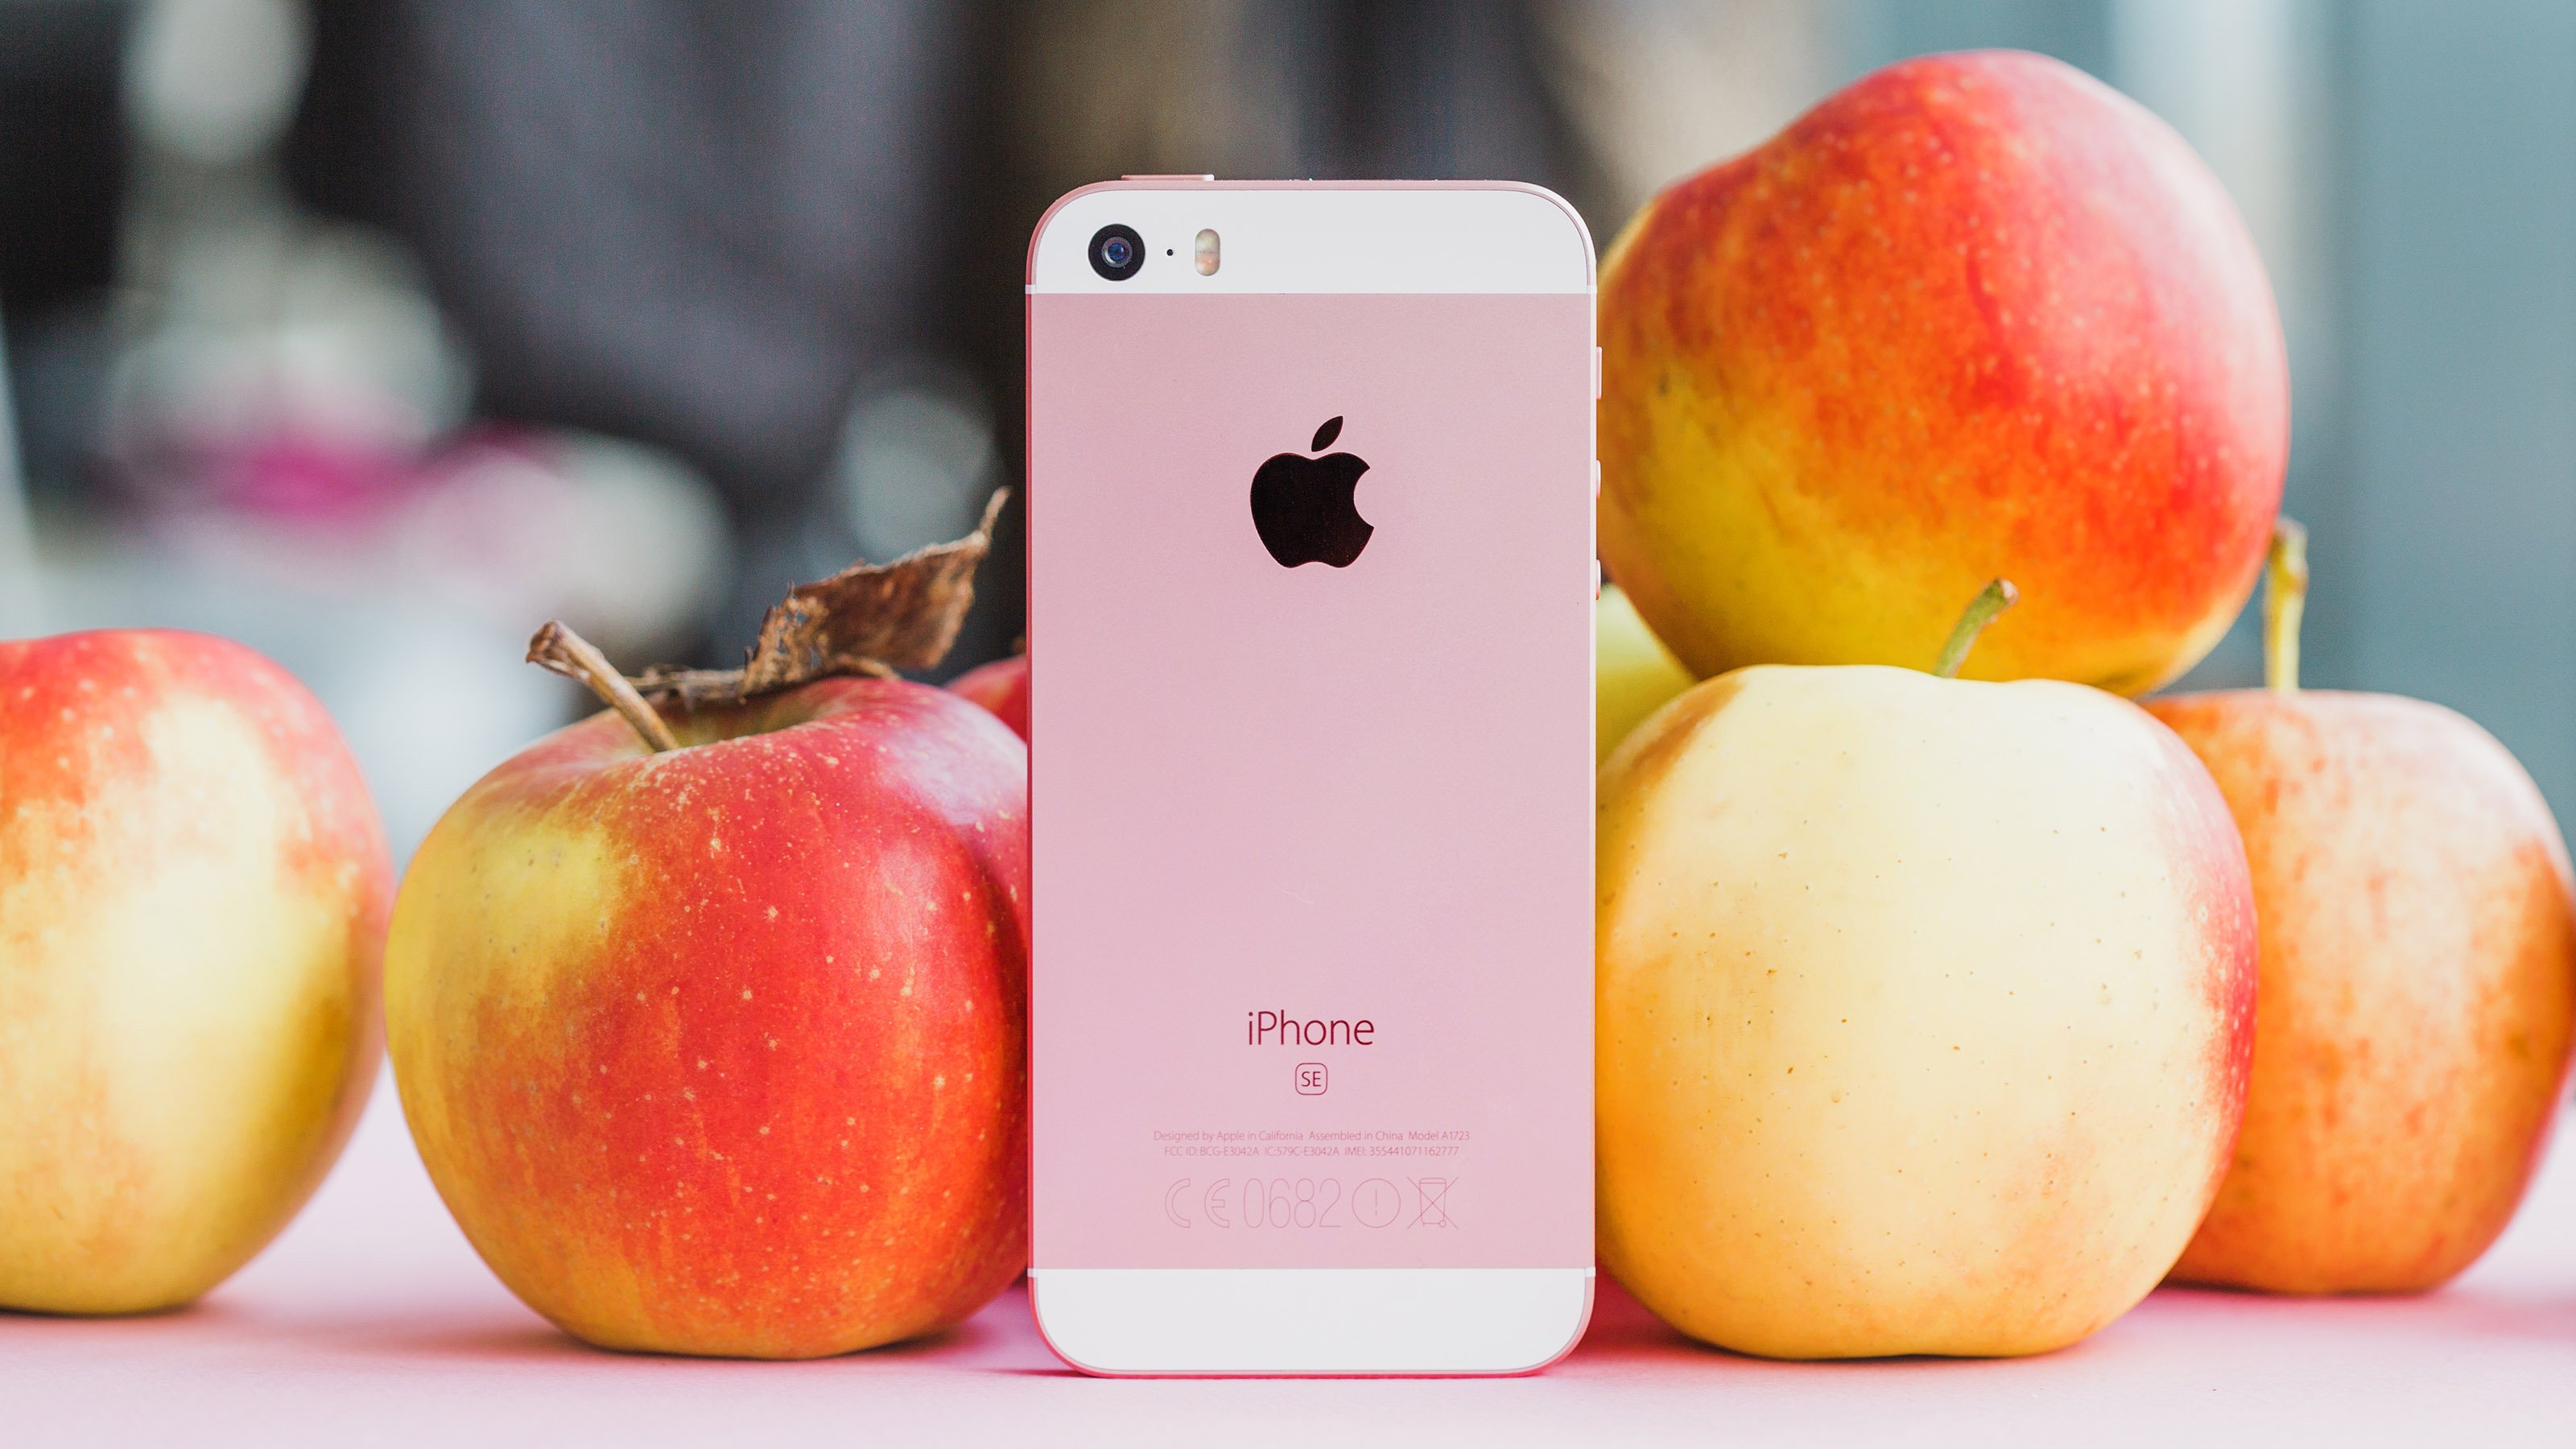 Apple har identifierat den första iPhone SE som en föråldrad produkt